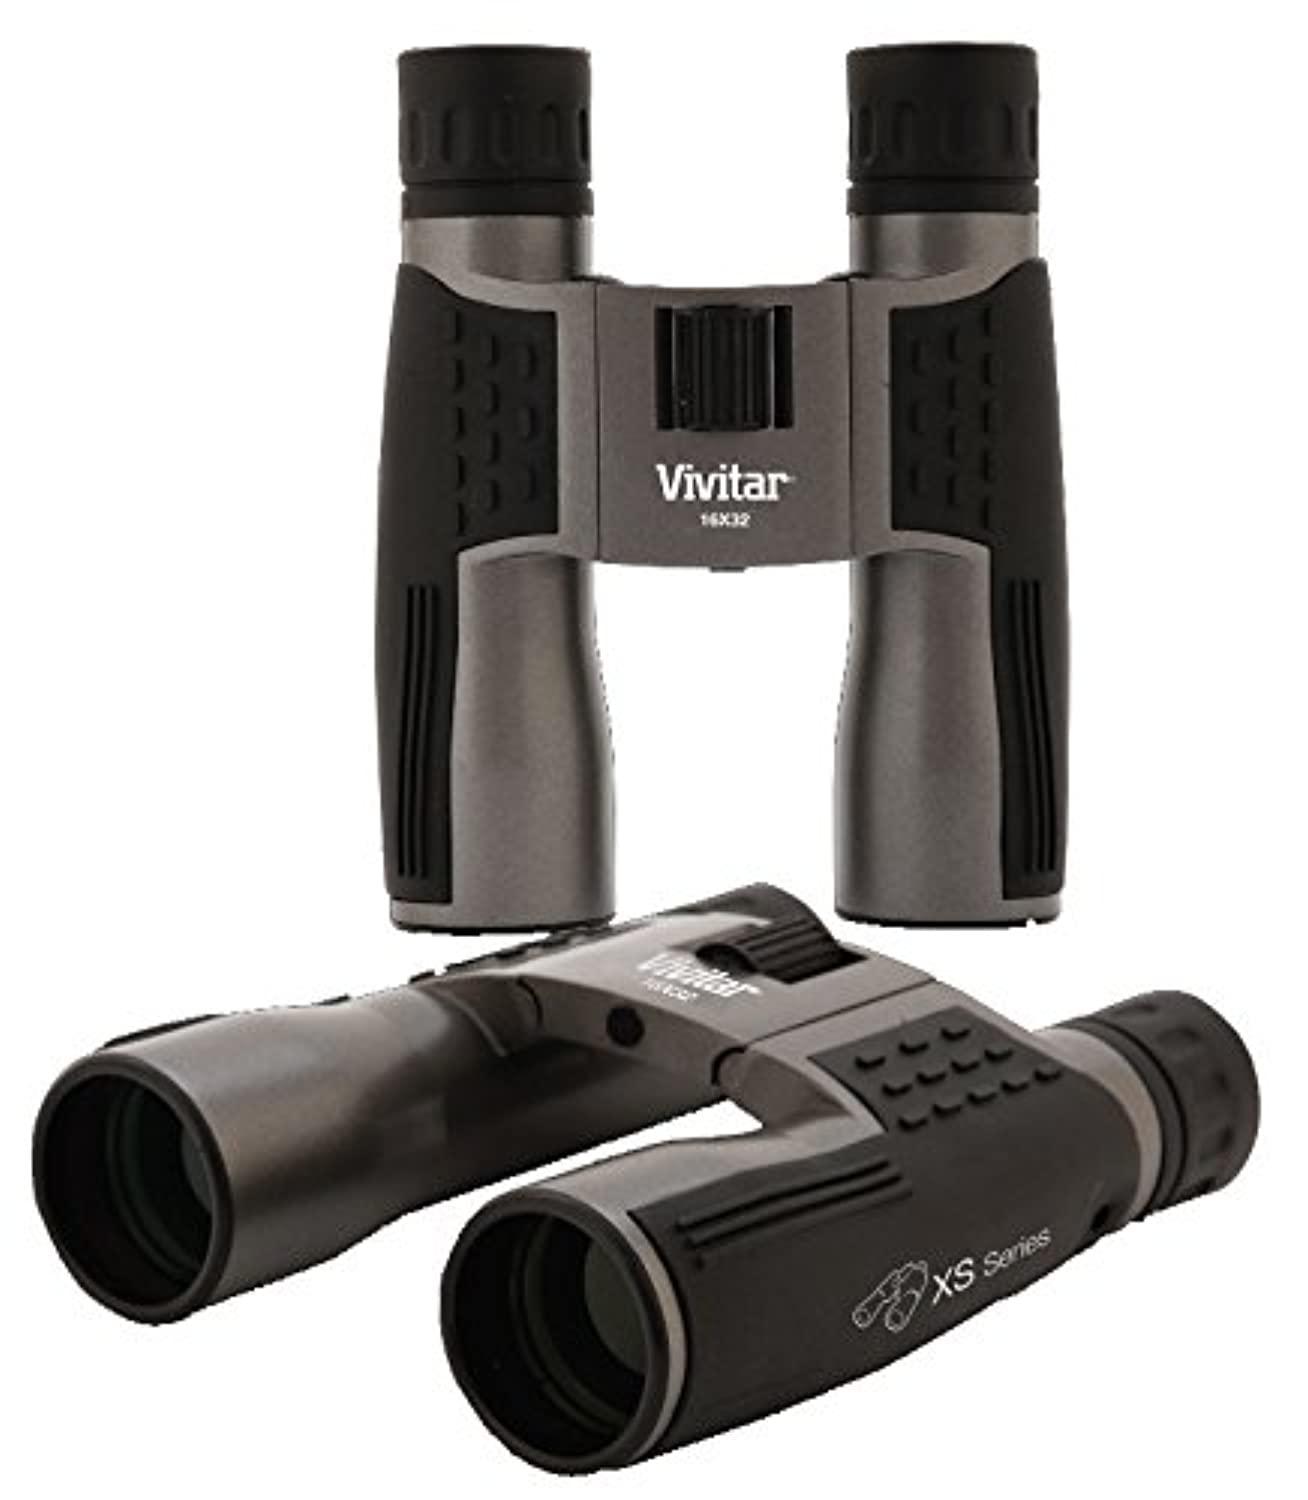 Vivitar 8x42 binoculars